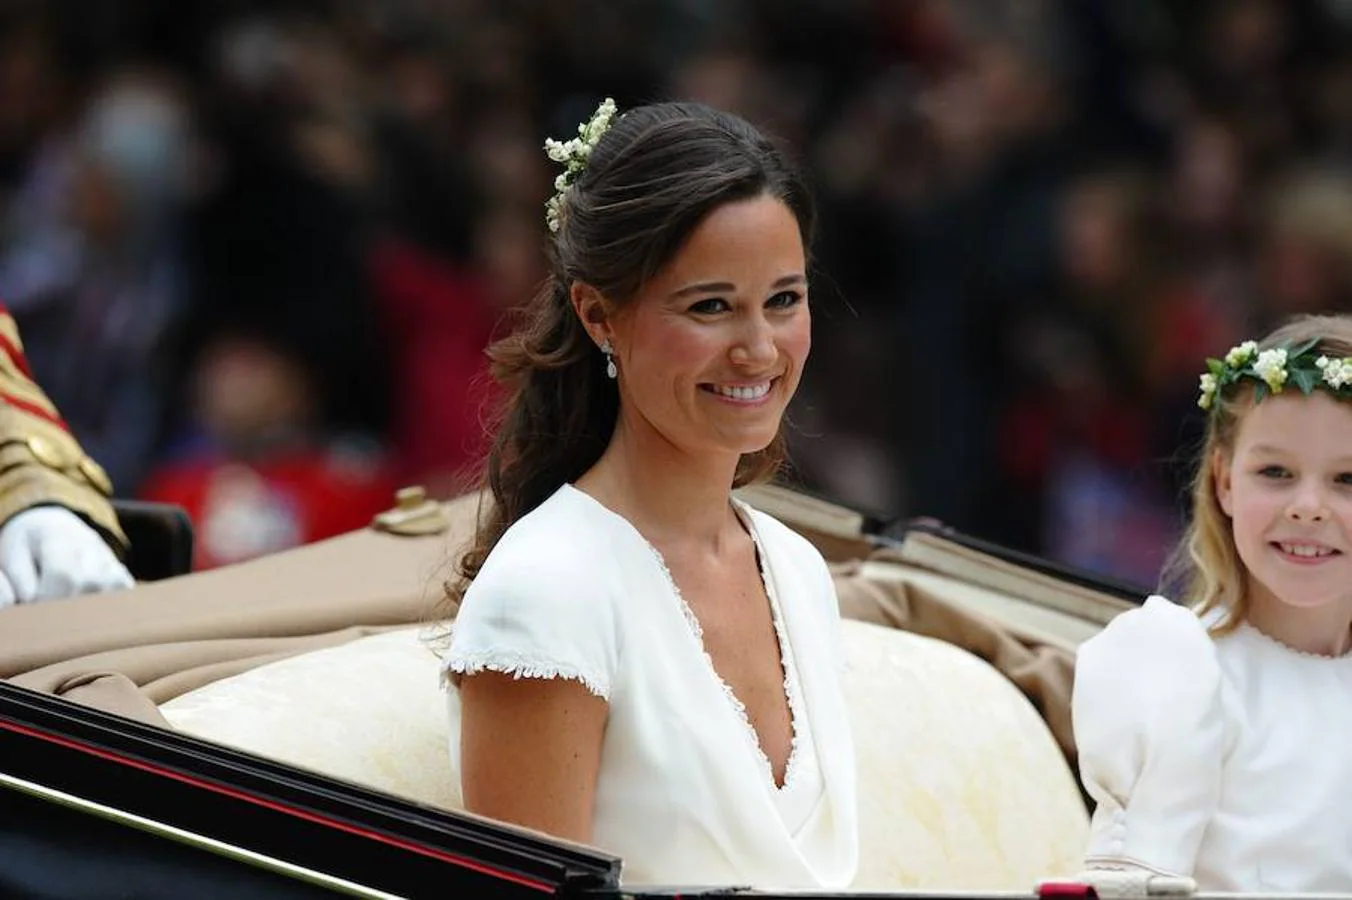 Han pasado seis años desde que Pippa Middleton dejara boquiabierto al mundo entero con su espectacular figura, ceñida en un favorecedor vestido blanco, el día de la boda de su hermana con el Príncipe Guillermo de Inglaterra